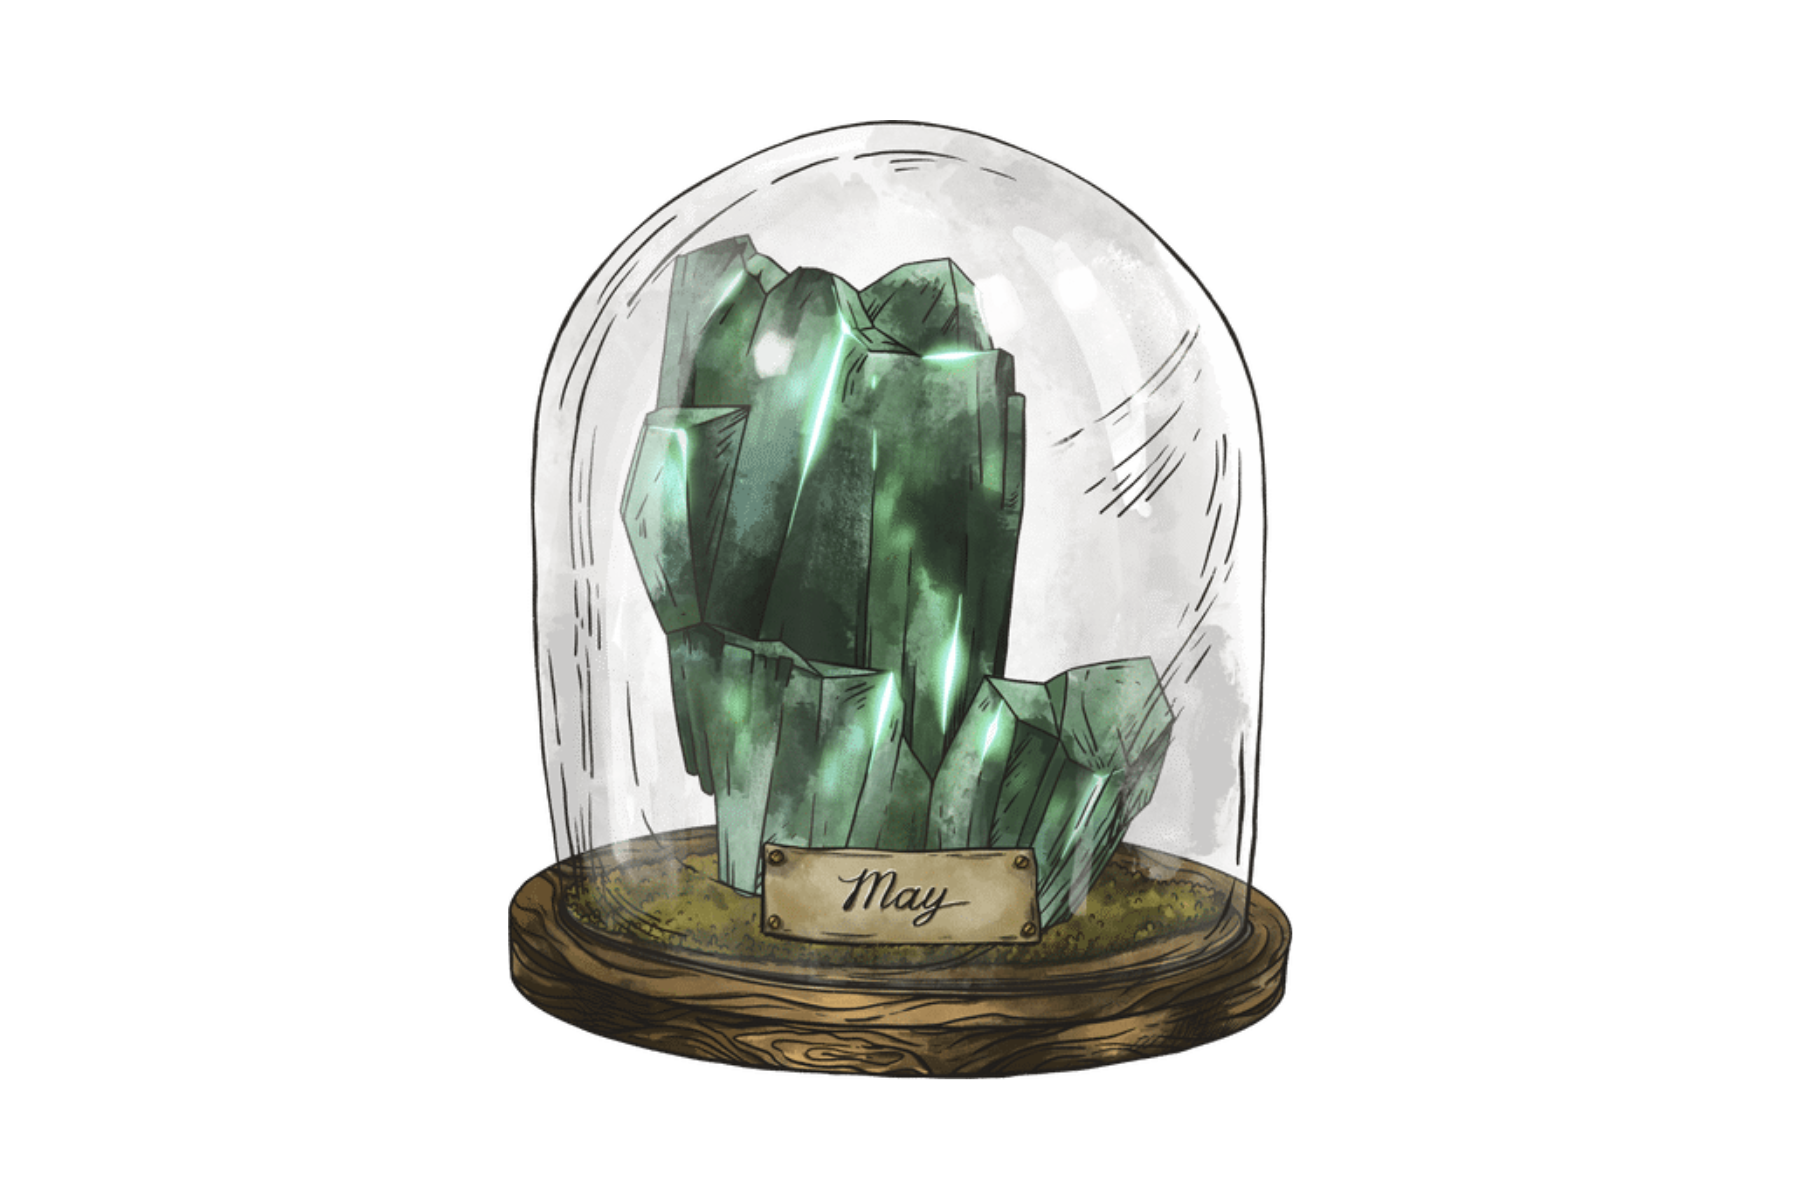 A glass jar with an Emerald birthstone